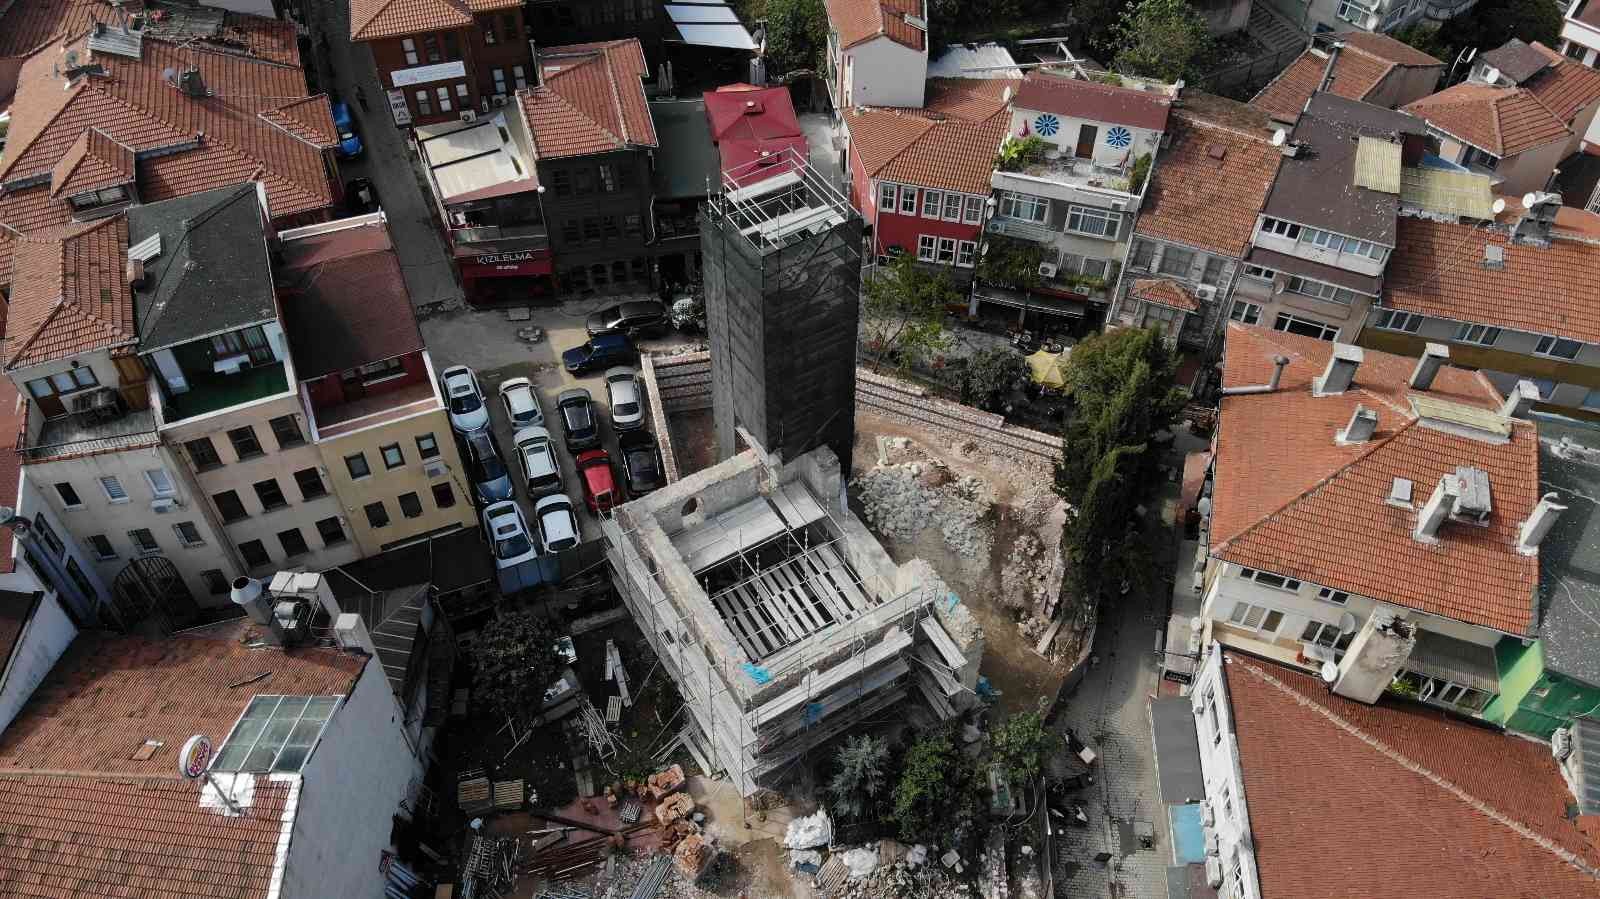 (Özel) Üsküdar’da 460 yıllık Gülfem Hatun Camii’nin restorasyon çalışması havadan görüntülendi #istanbul